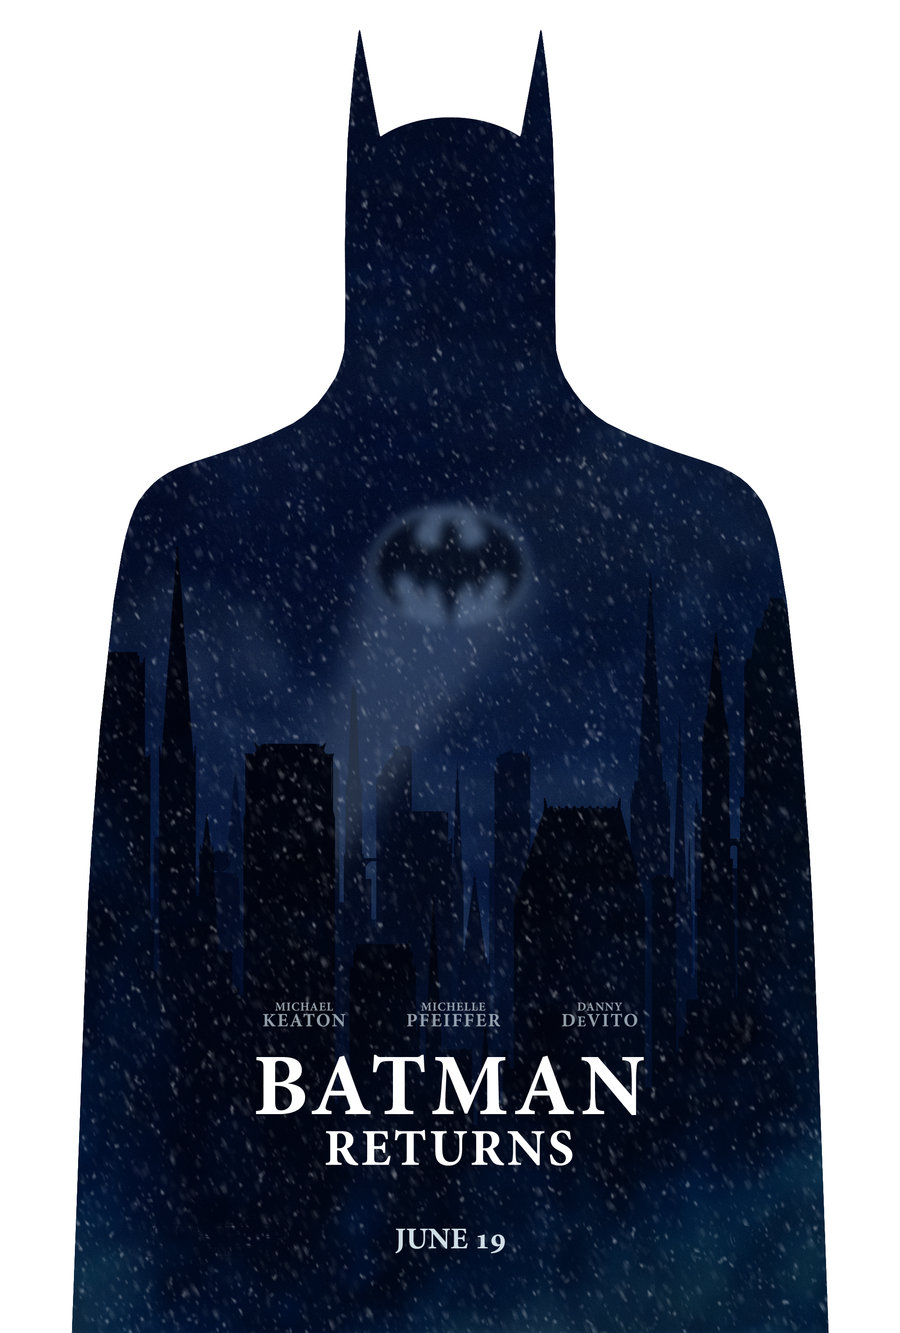 Batman Returns poster by drMIERZWIAK on DeviantArt